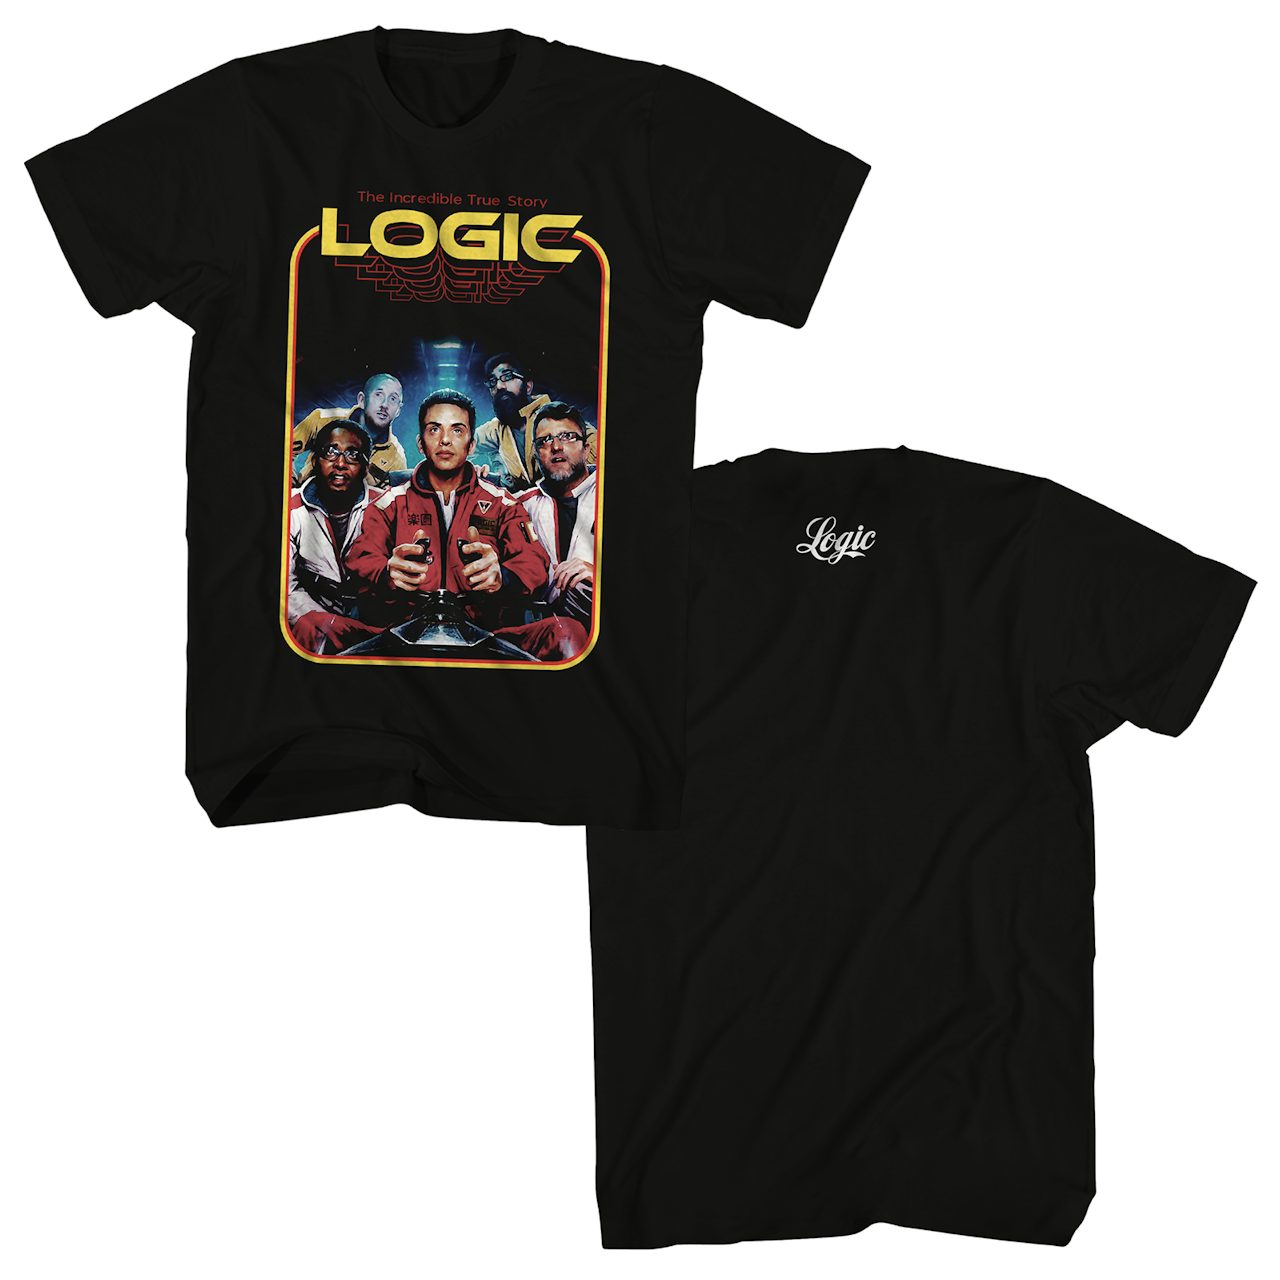 logic 2016 tour shirt